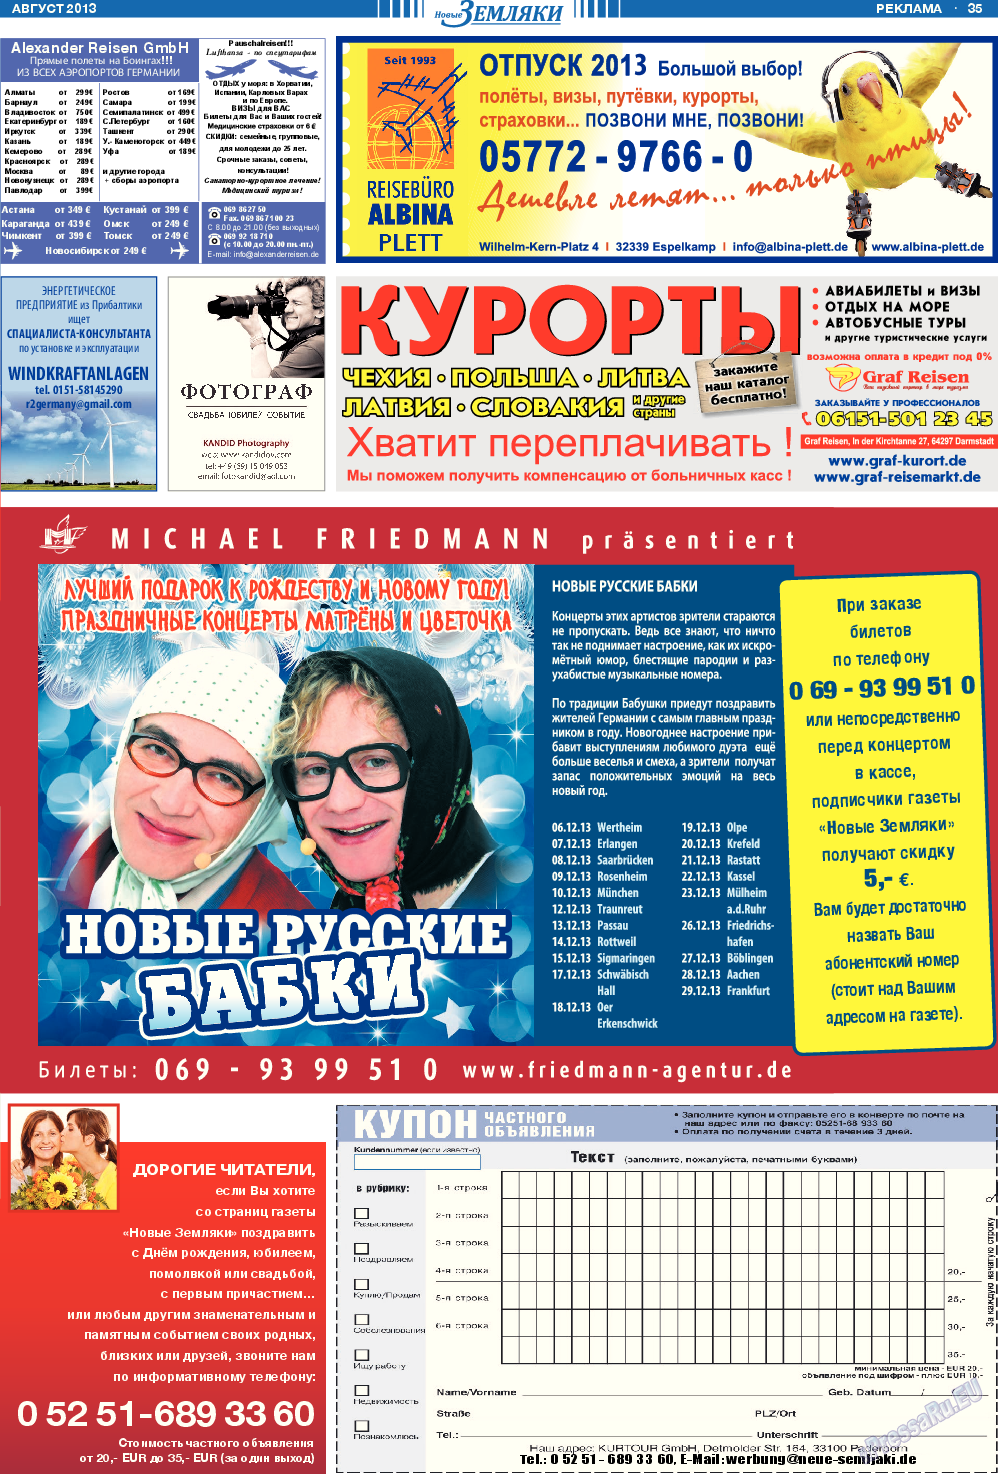 Новые Земляки, газета. 2013 №8 стр.35